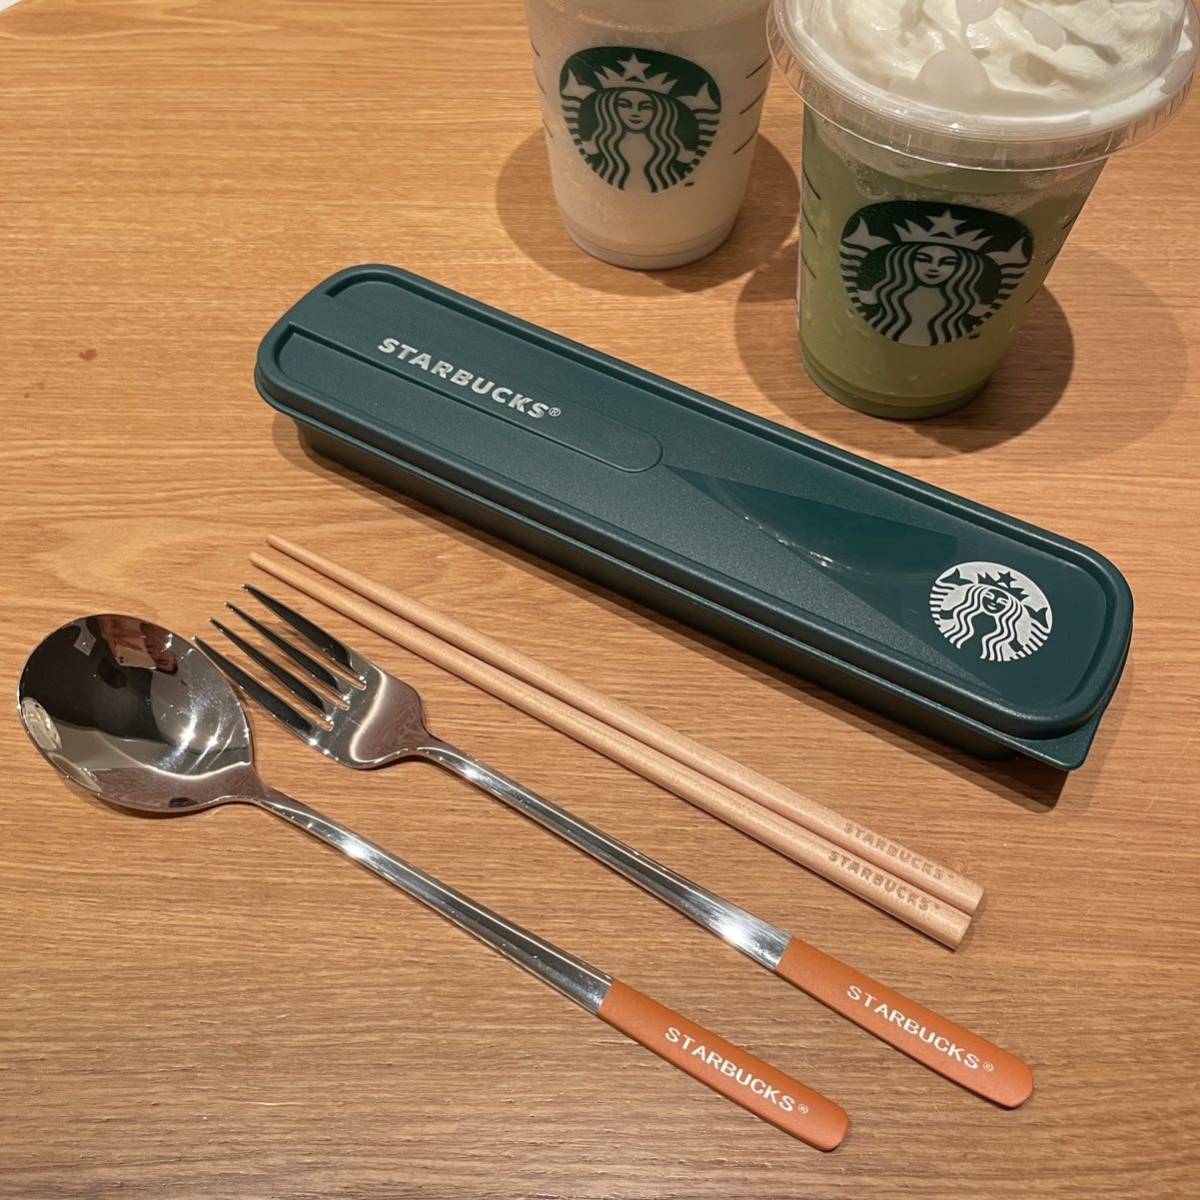  за границей ограничение старт ba Starbucks ножи посуда комплект специальный с коробкой .. зеленый 